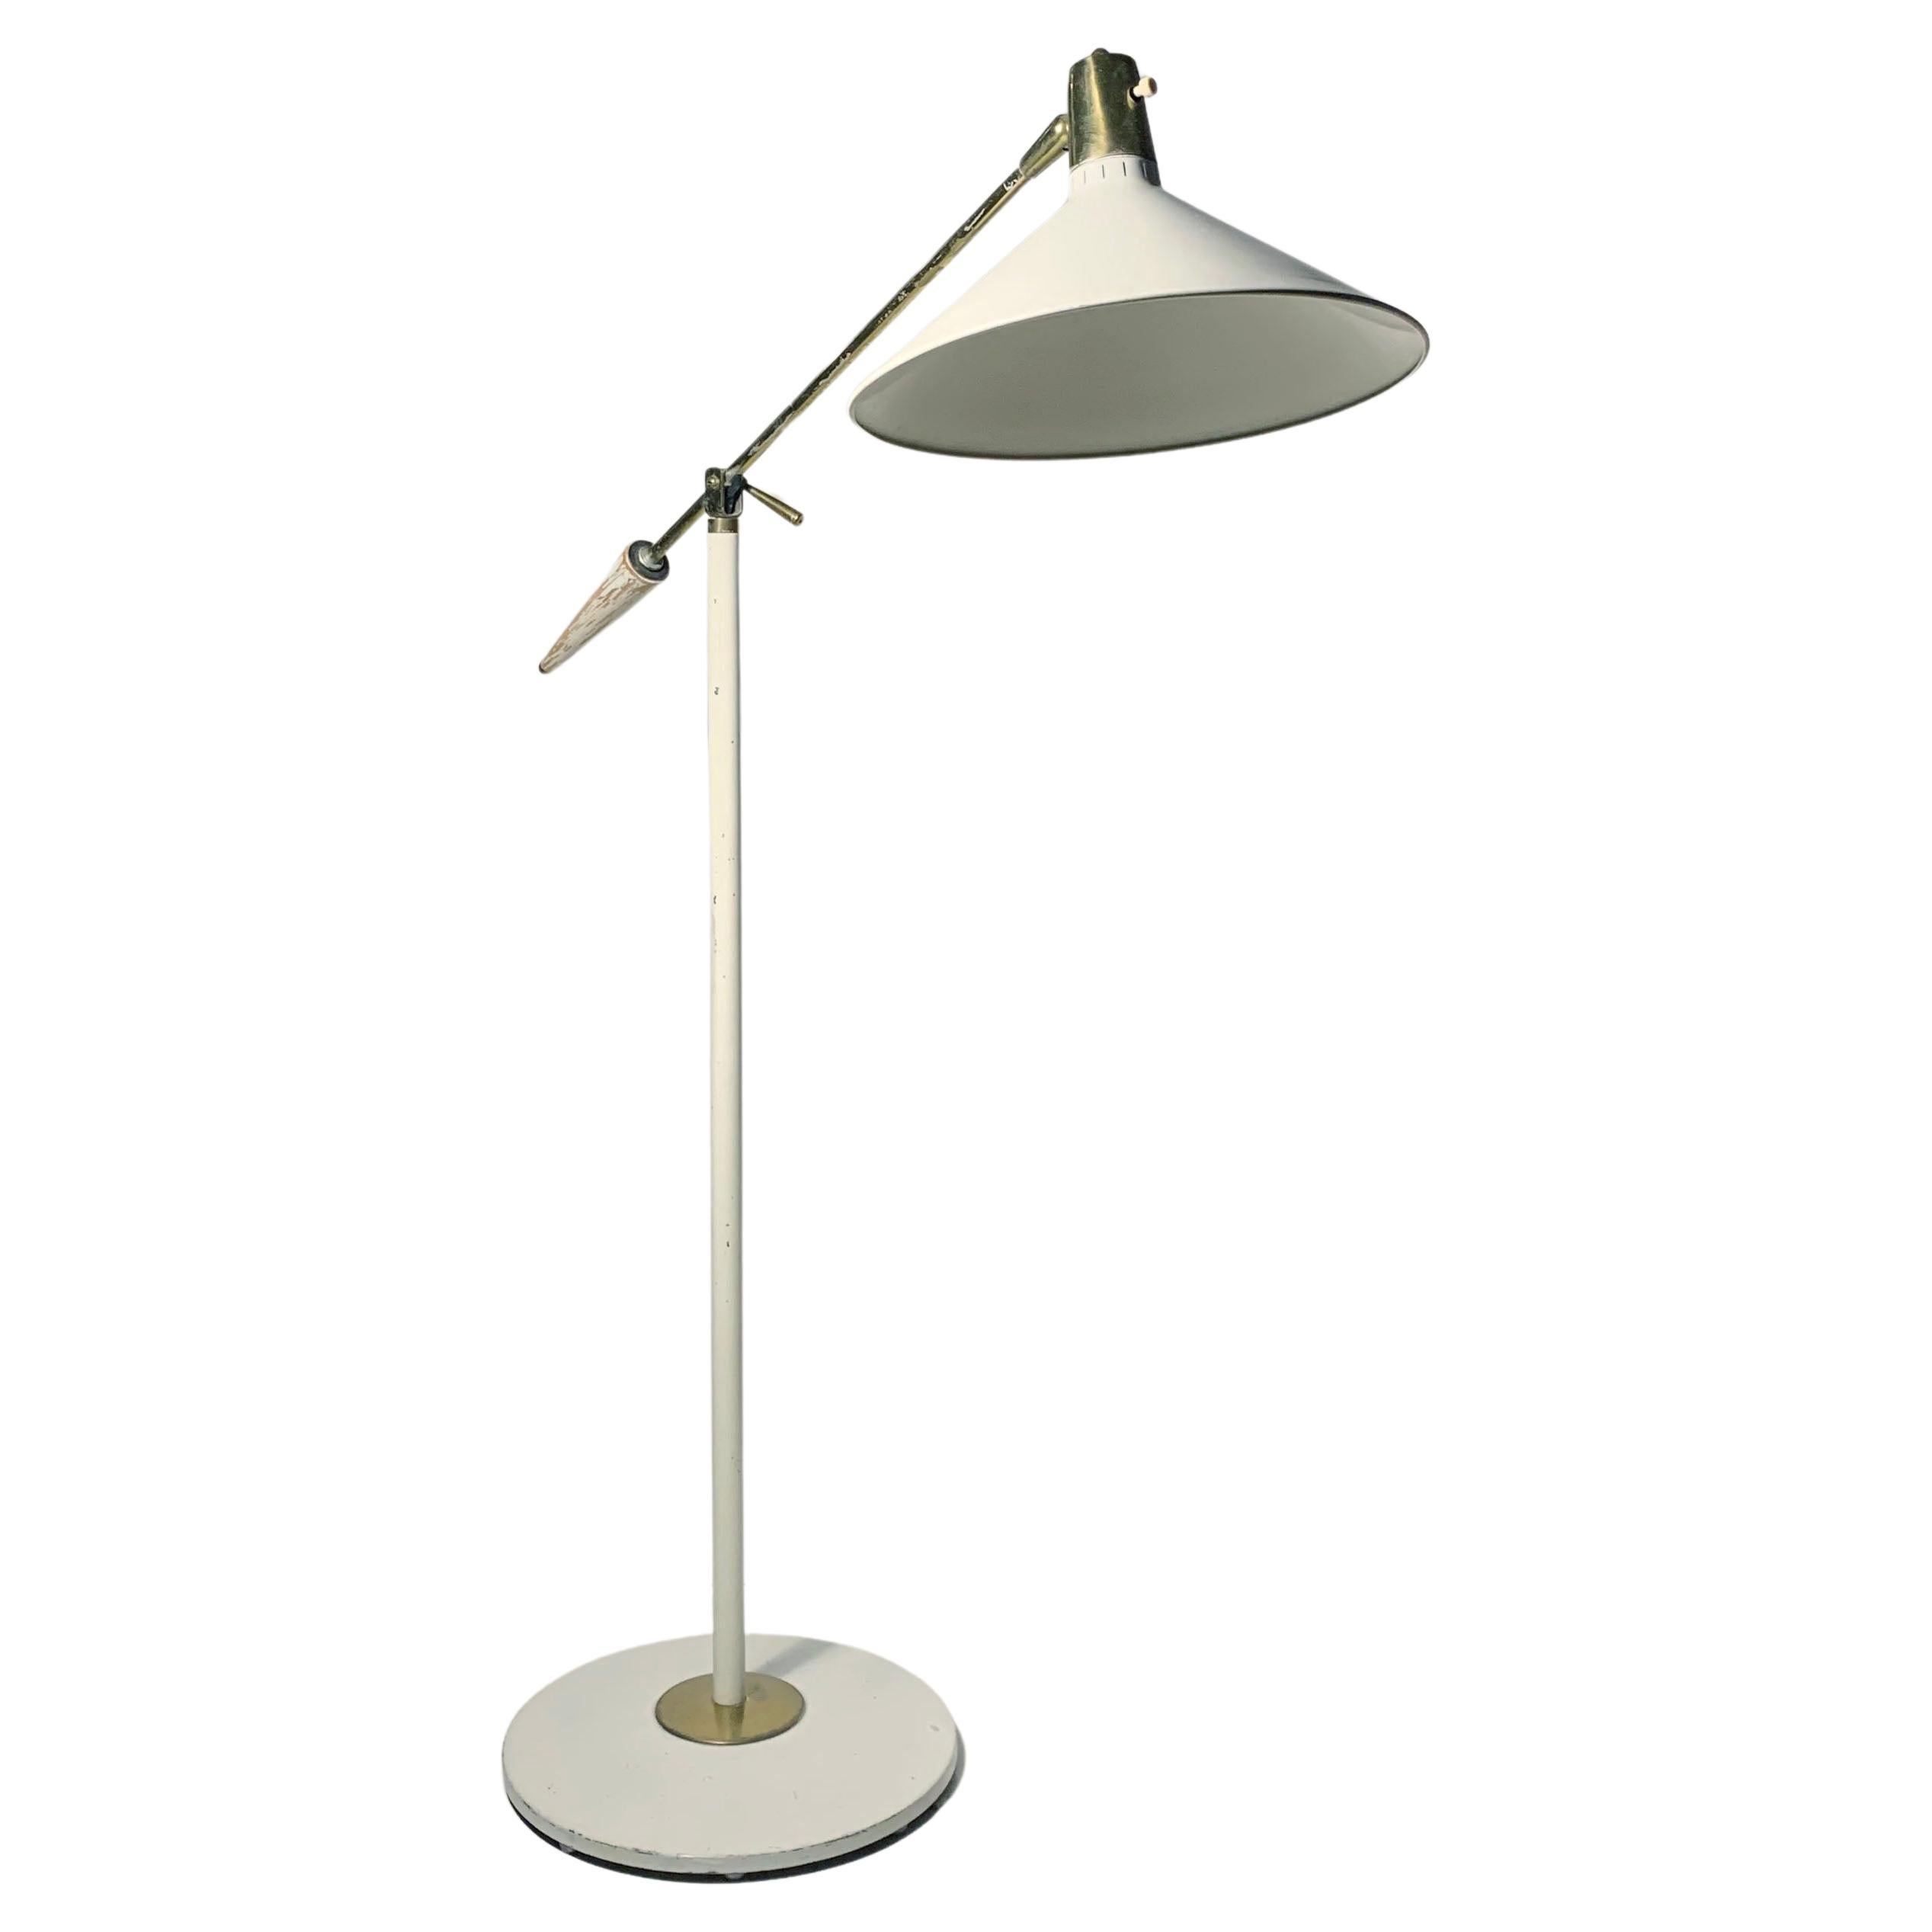 Stehlampe Gerald Thurston für Lightolier, Vintage